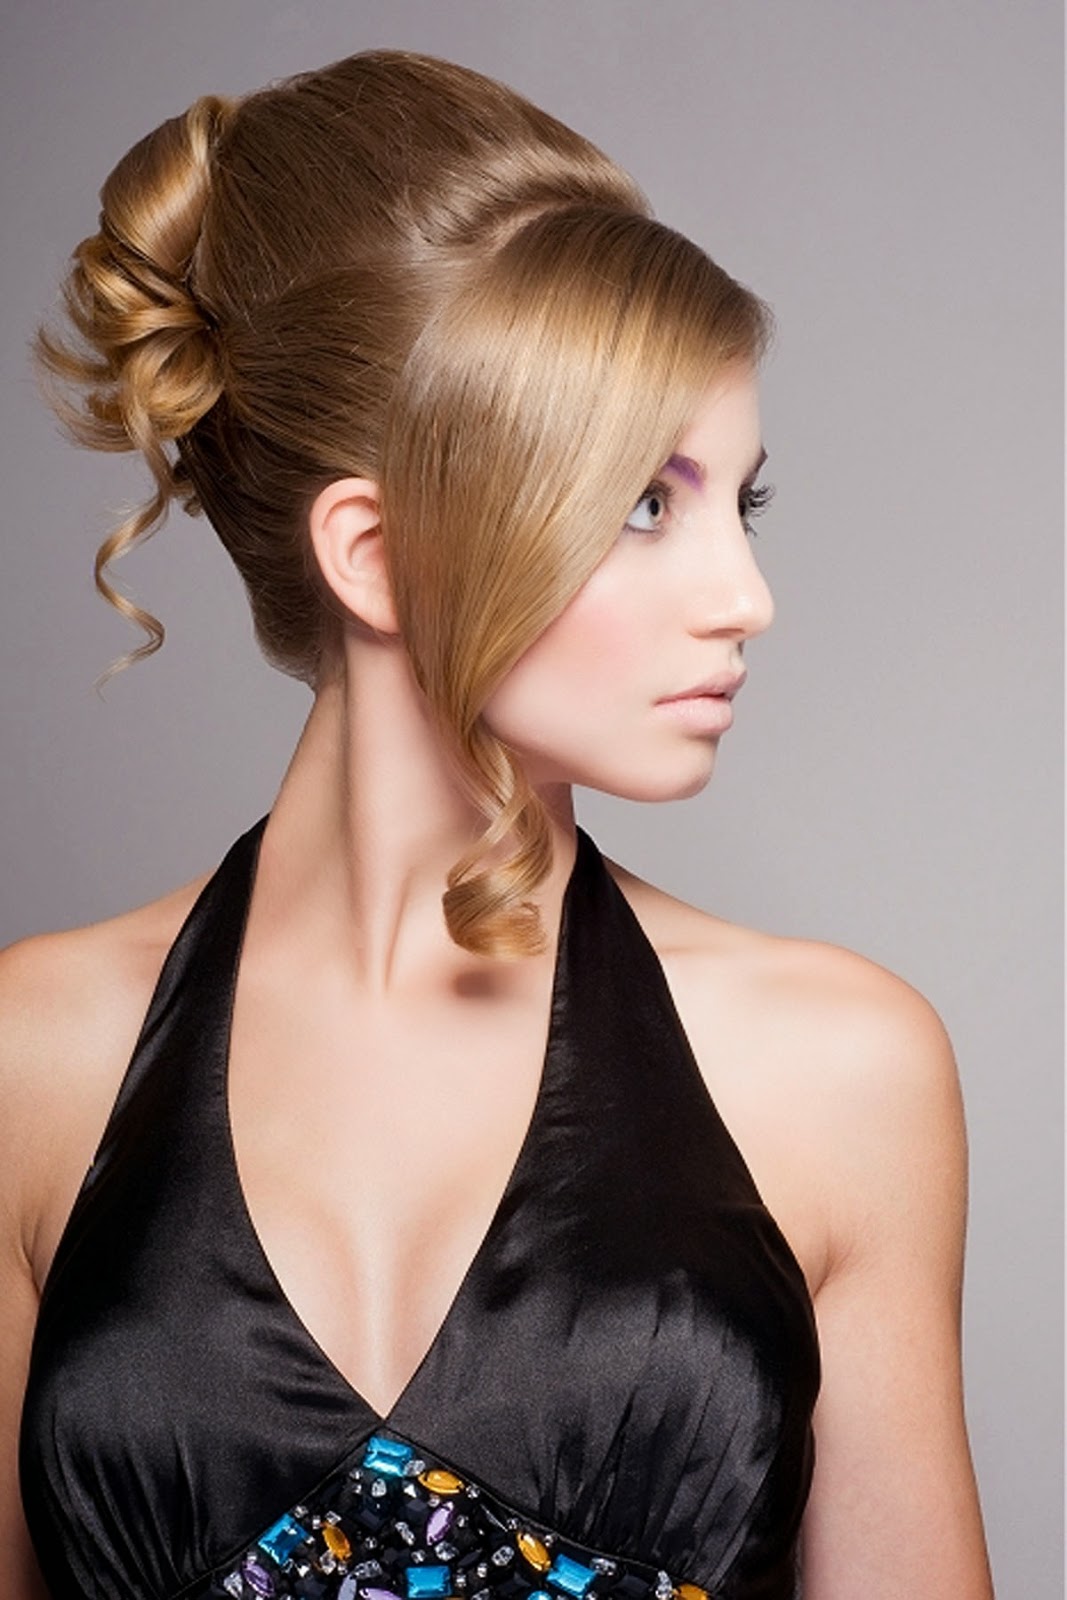 Hairstyles for long hair women pinterest : Hair Fashion ...